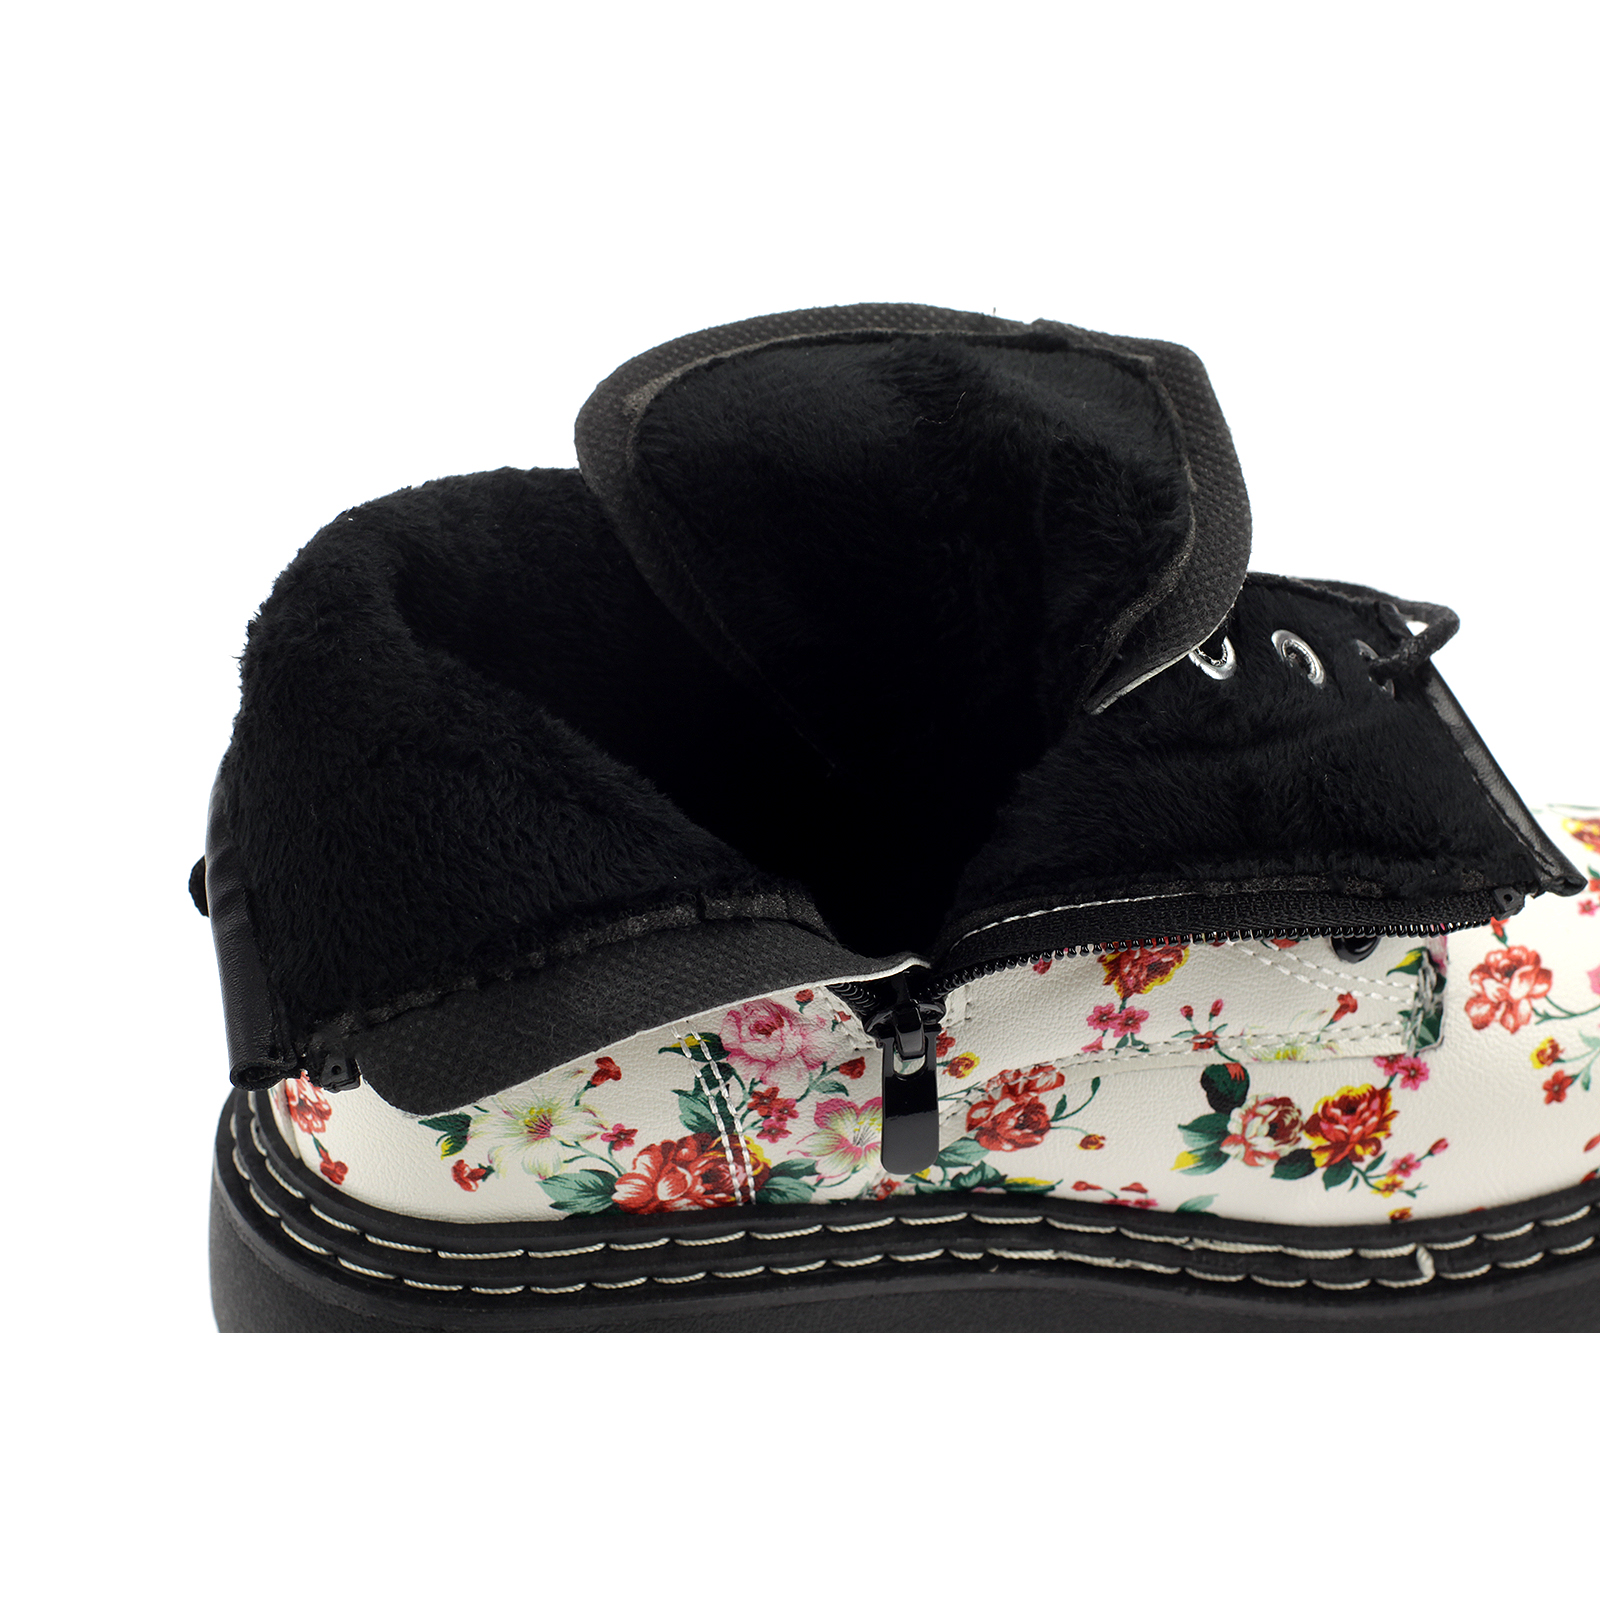 Damen Boots Stiefeletten Stiefel Gefütterte Schuhe Blumen Freizeit 20201-Green-pink